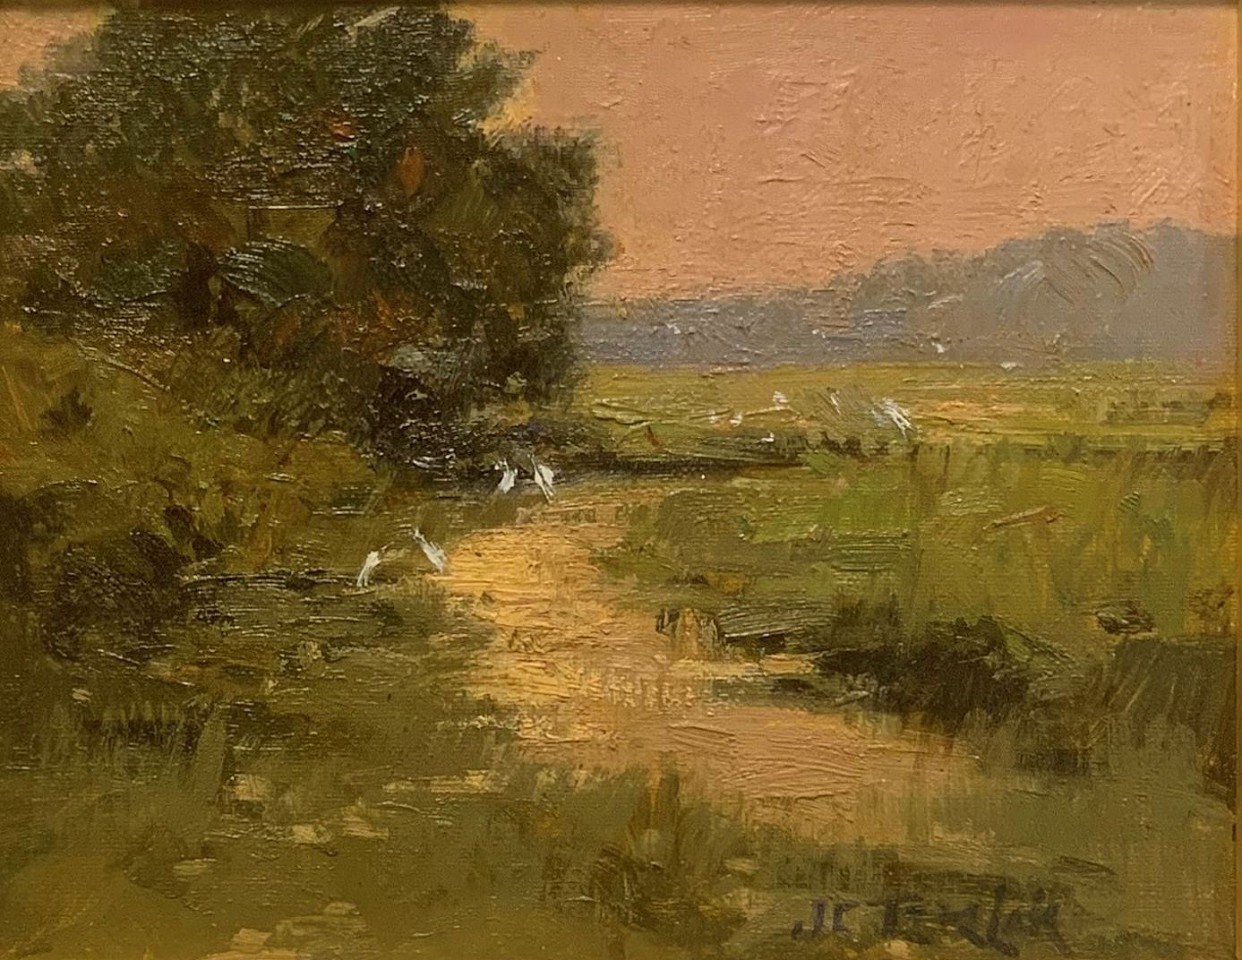 John Terelak, Egrets, 2003
oil on canvas, 8 x 10 in. (20.3 x 25.4 cm)
JT221104